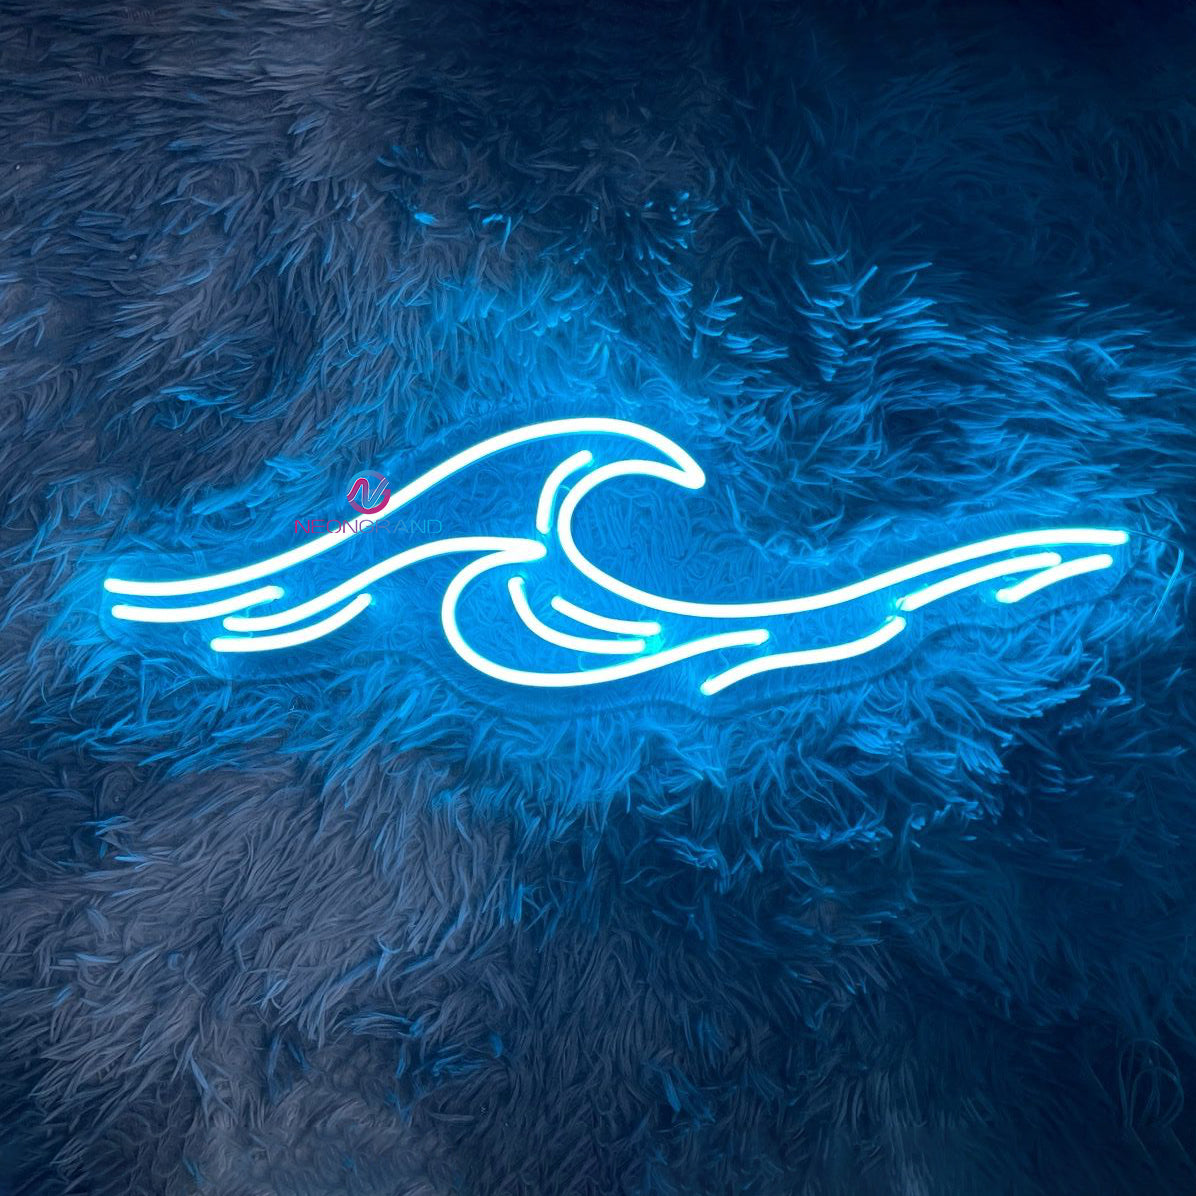 Ocean Waves Neon Sign Led Light